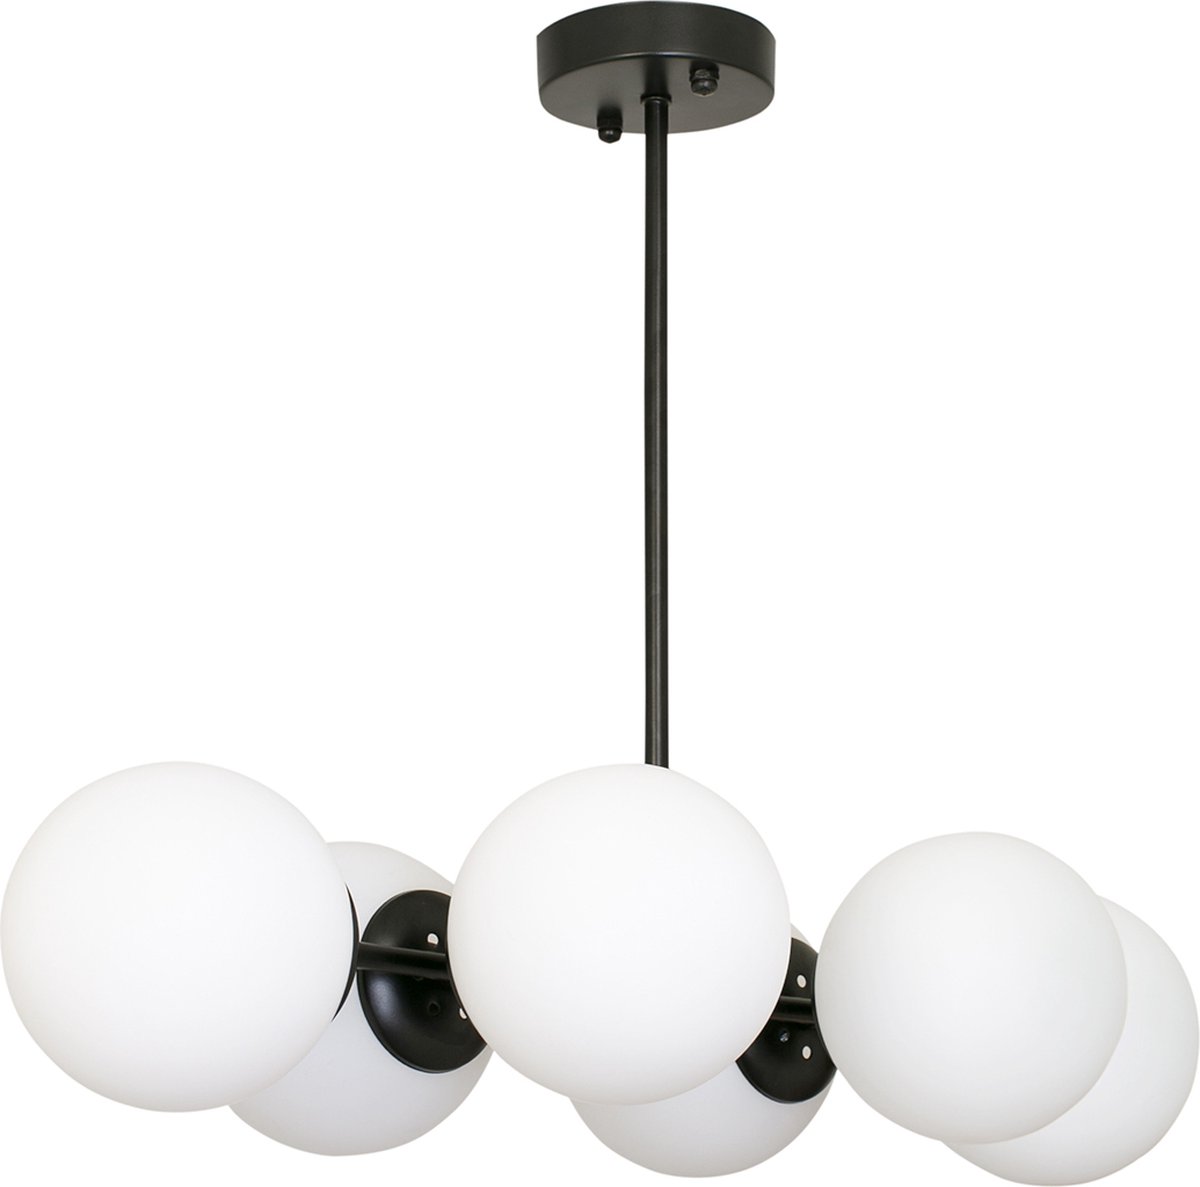 Chesto Lara Milky - Luxe Industriële Hanglamp - 6 Glazen Bollen Crème Wit - Eetkamer, Woonkamer